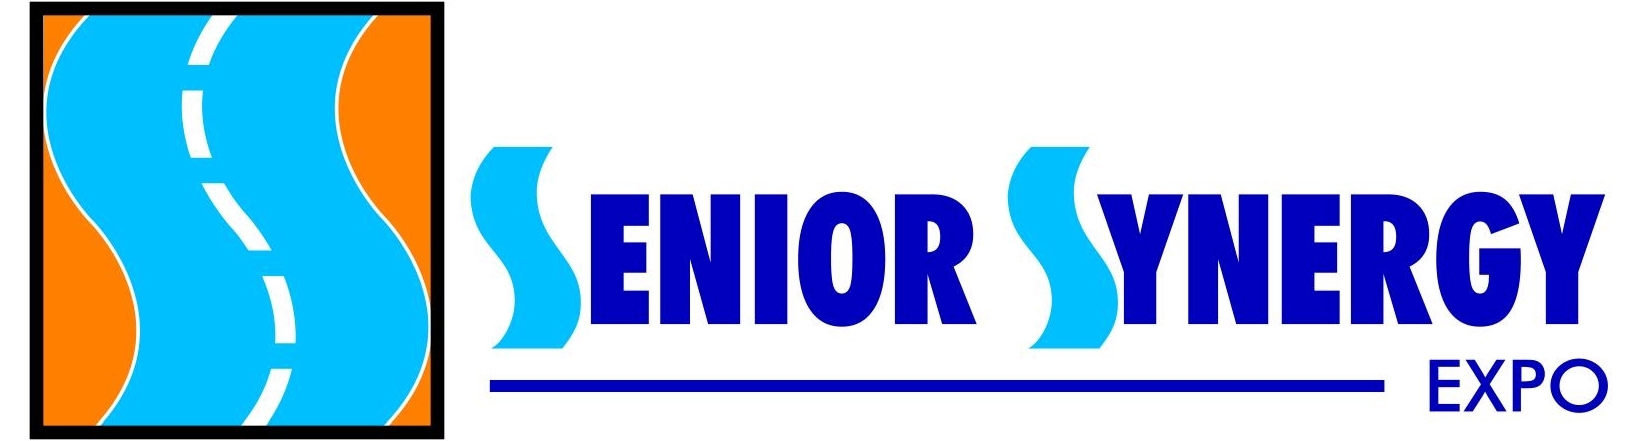 Senior Synergy Expo Banner